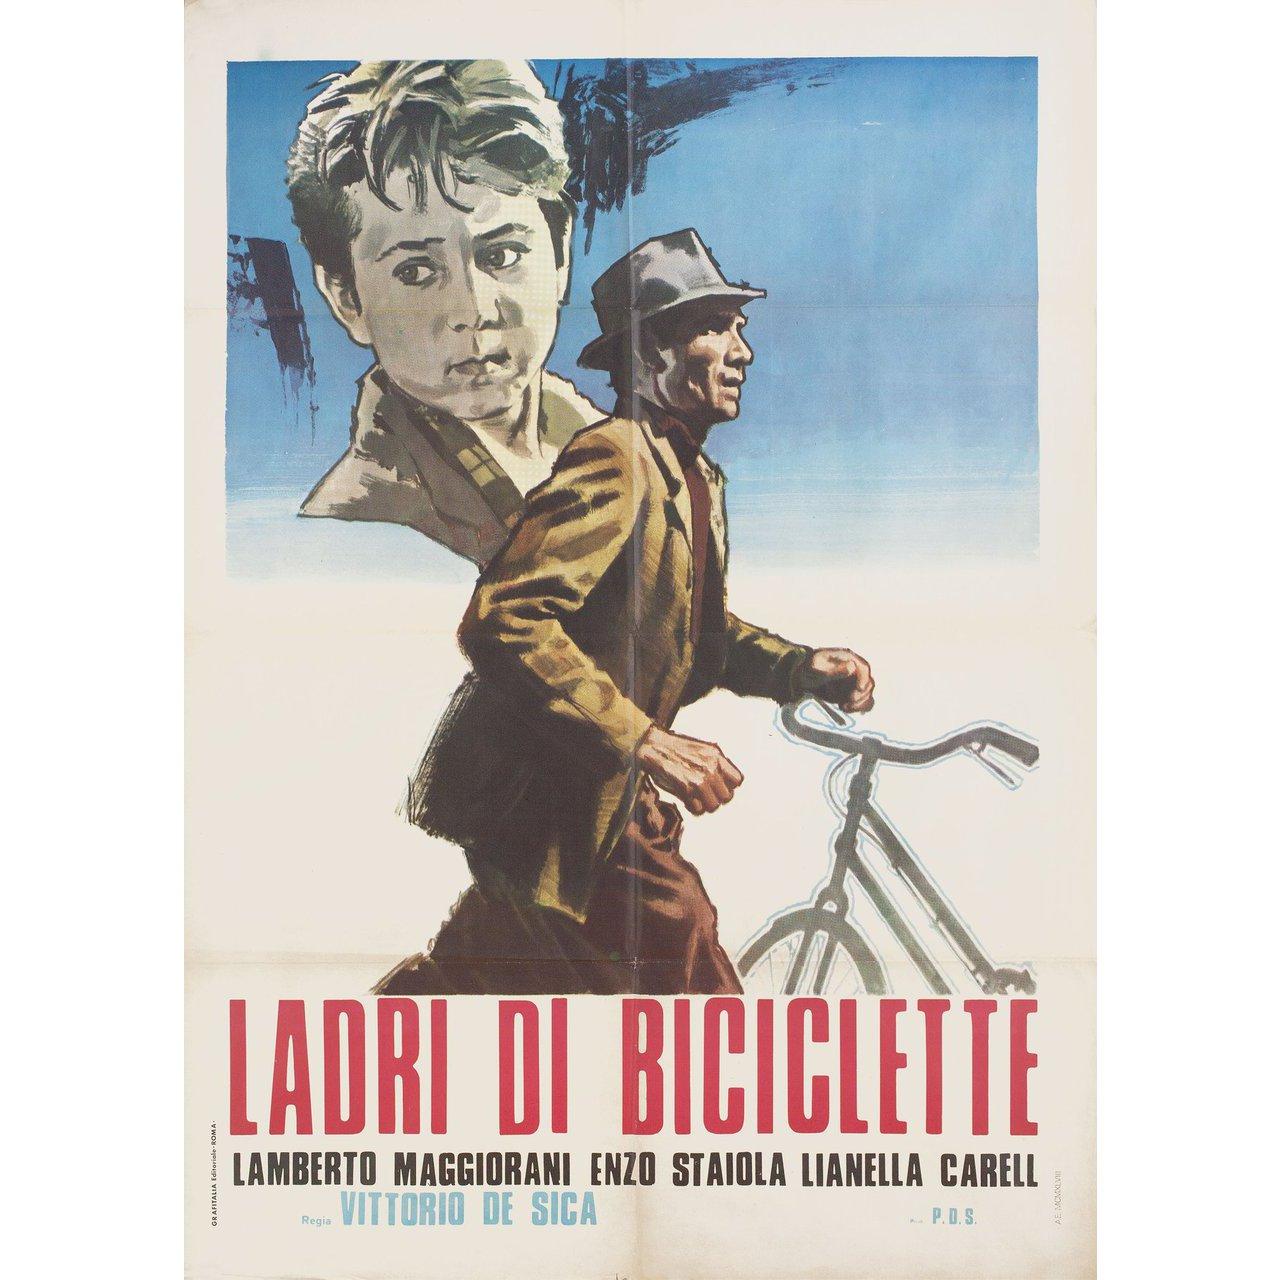 Original 1958 re-release Italian due fogli poster for the 1948 film The Bicycle Thief (Ladri di biciclette) directed by Vittorio De Sica with Lamberto Maggiorani / Enzo Staiola / Lianella Carell / Gino Saltamerenda. Very Good-Fine condition, folded.